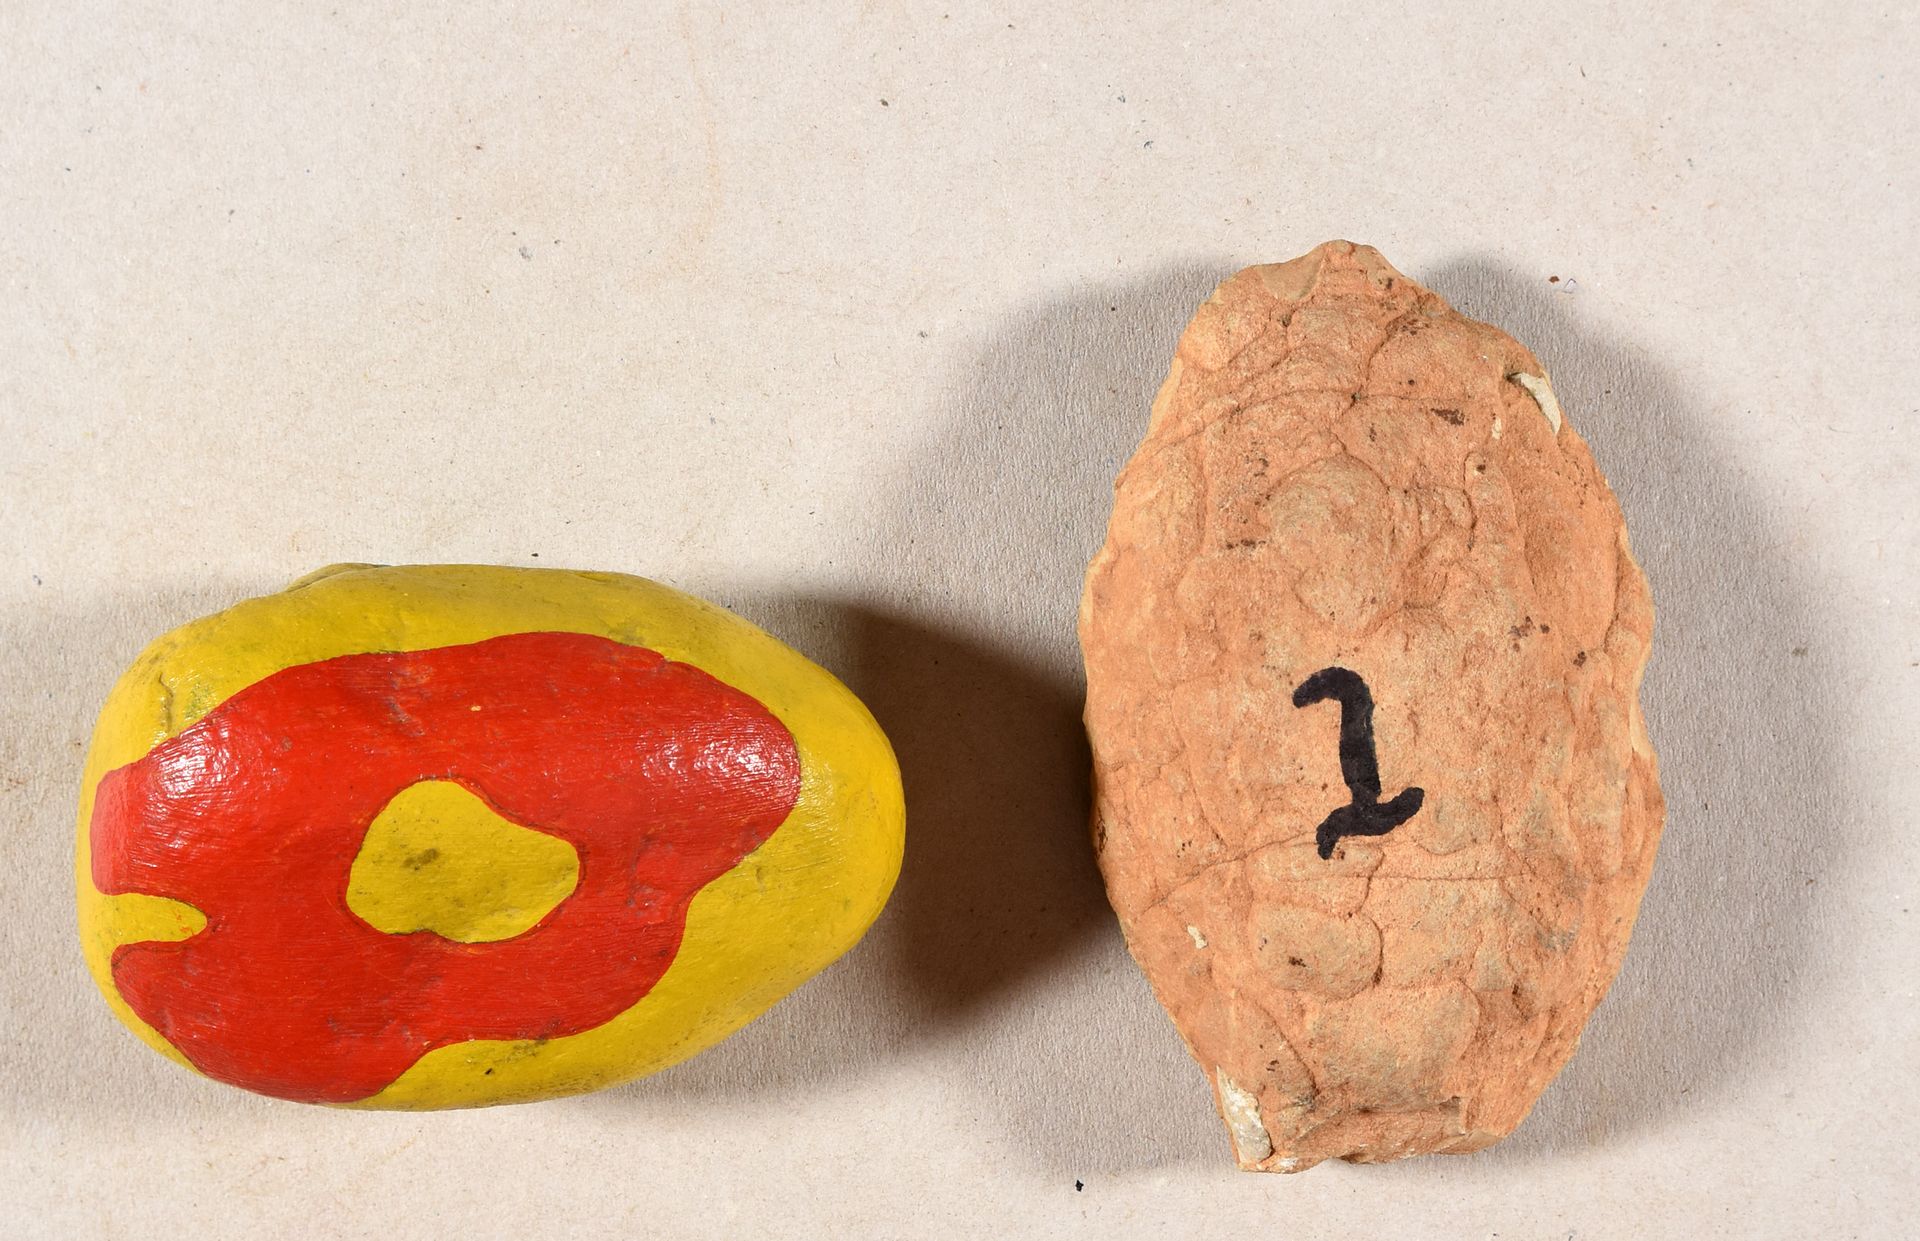 Mariën, Marcel MARIËN, Marcel Object in two parts. 1. Terracotta pebble, +/- 9 x&hellip;